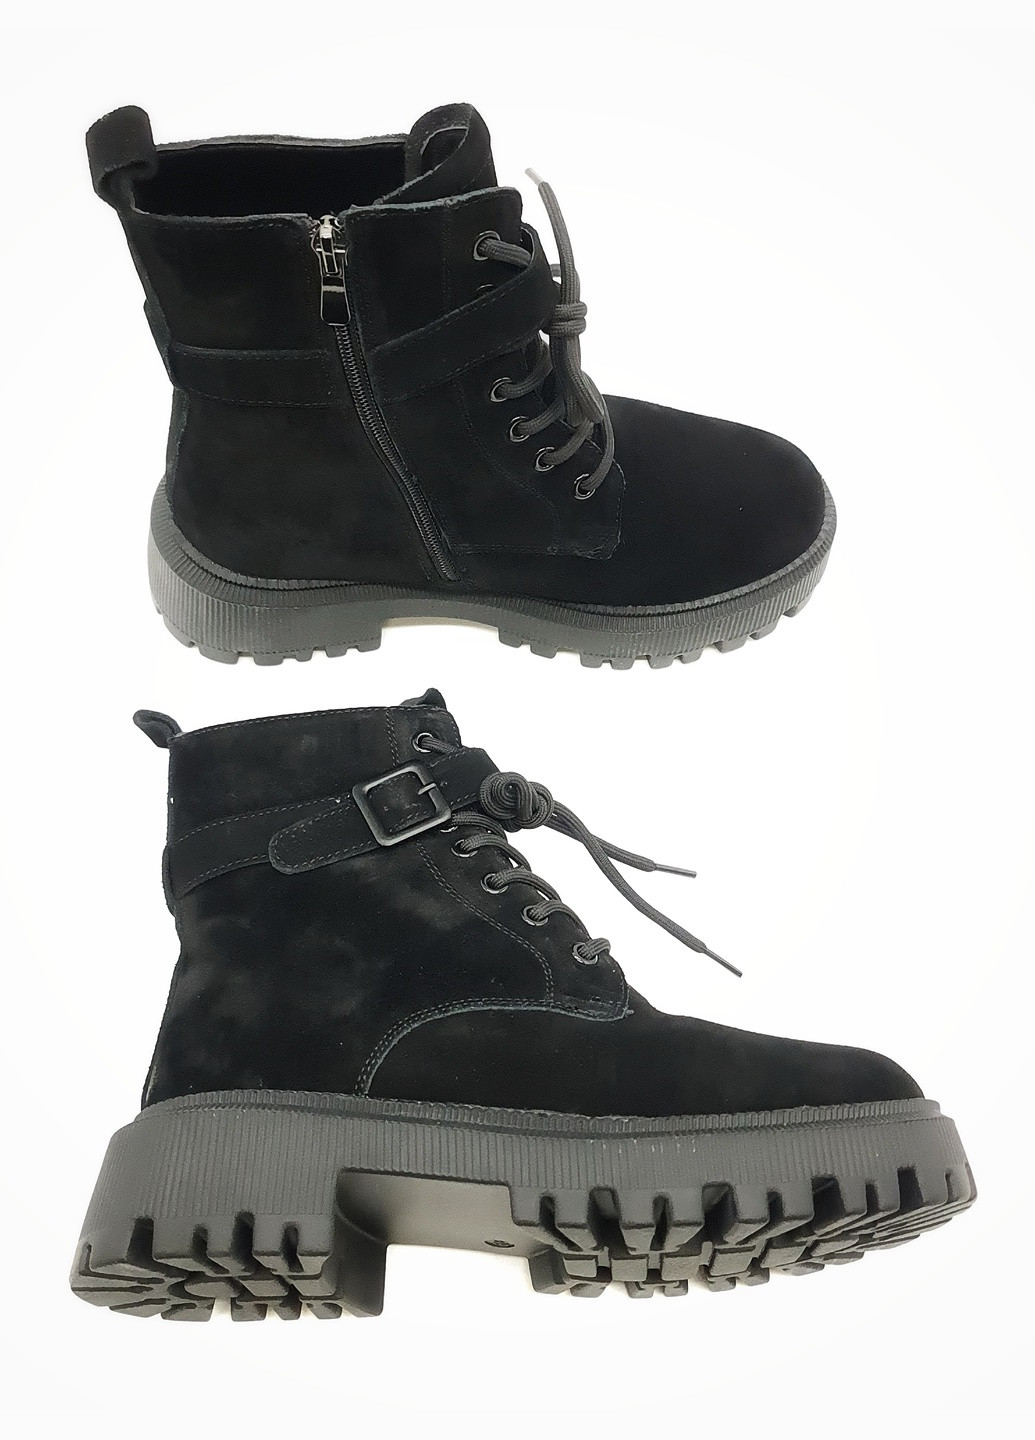 Жіночі черевики зимові чорні замшеві II-11-13 25,5 см (р) It is (259299427)